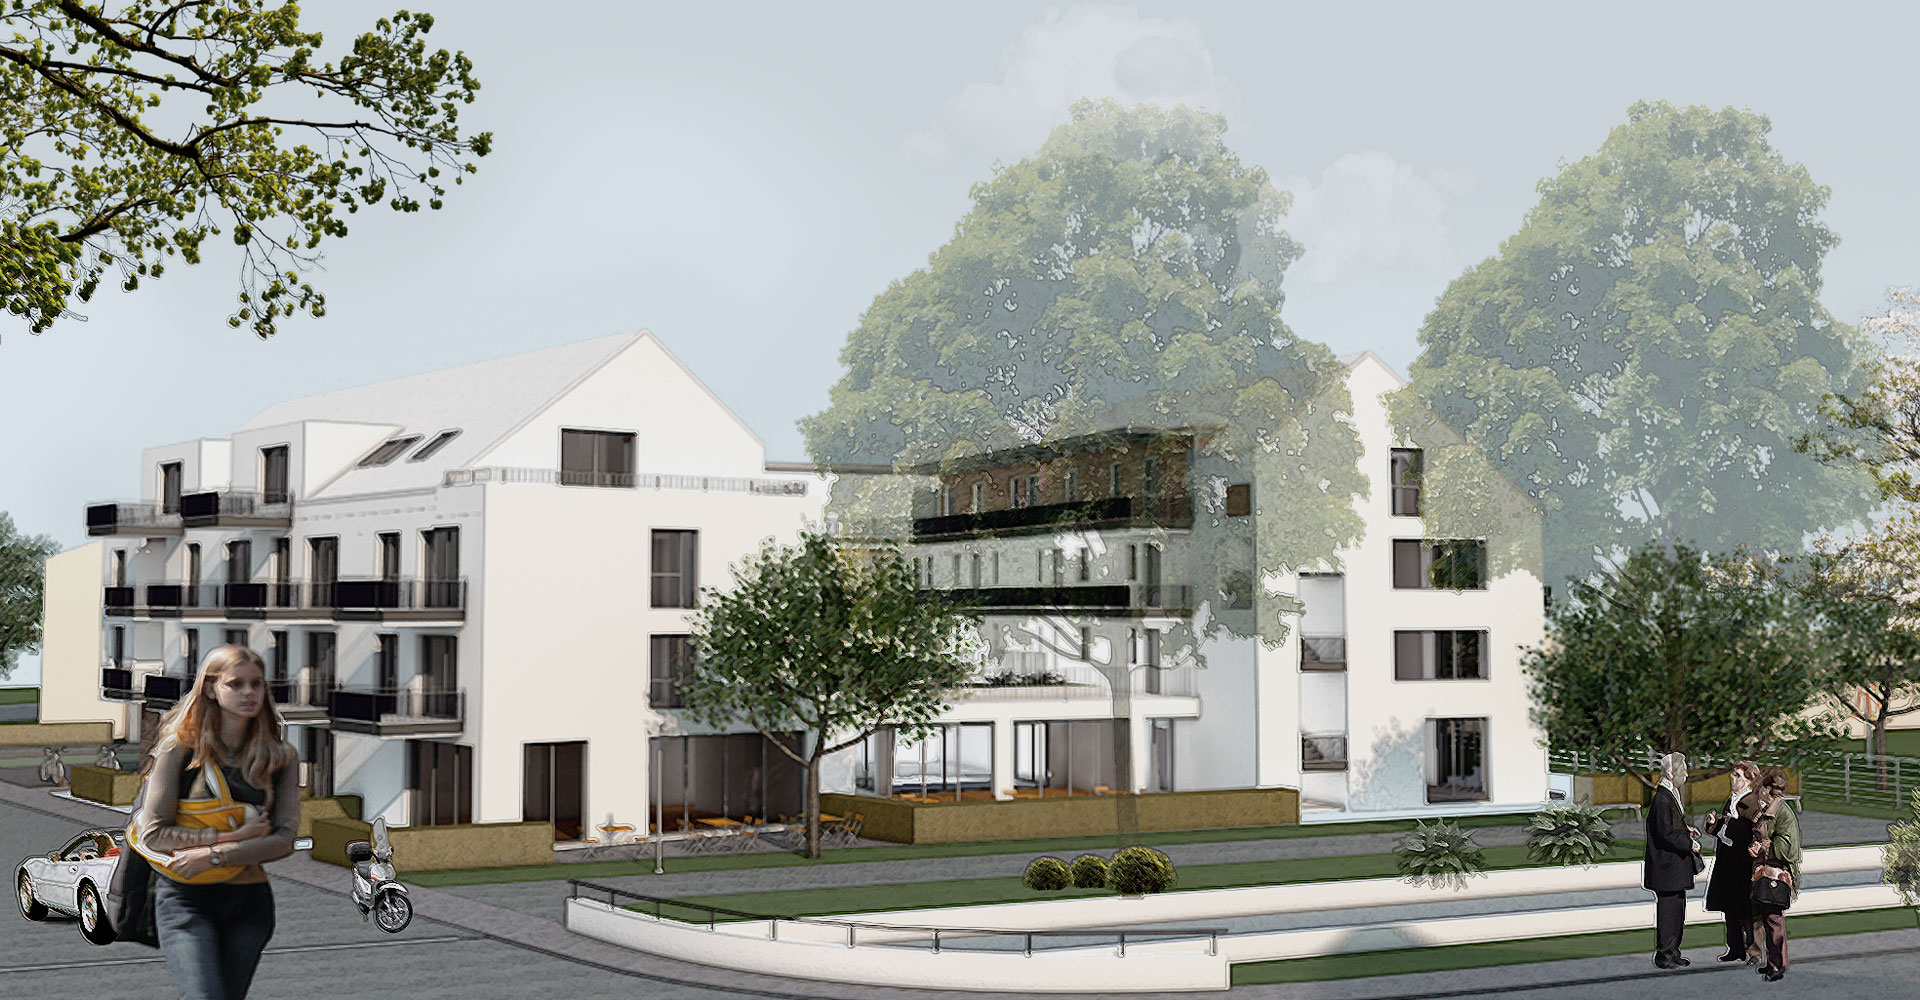 Plan Wohnen für Senioren, Mönchengladbach, consult Rheinbreitbach, Konzeption und Planung